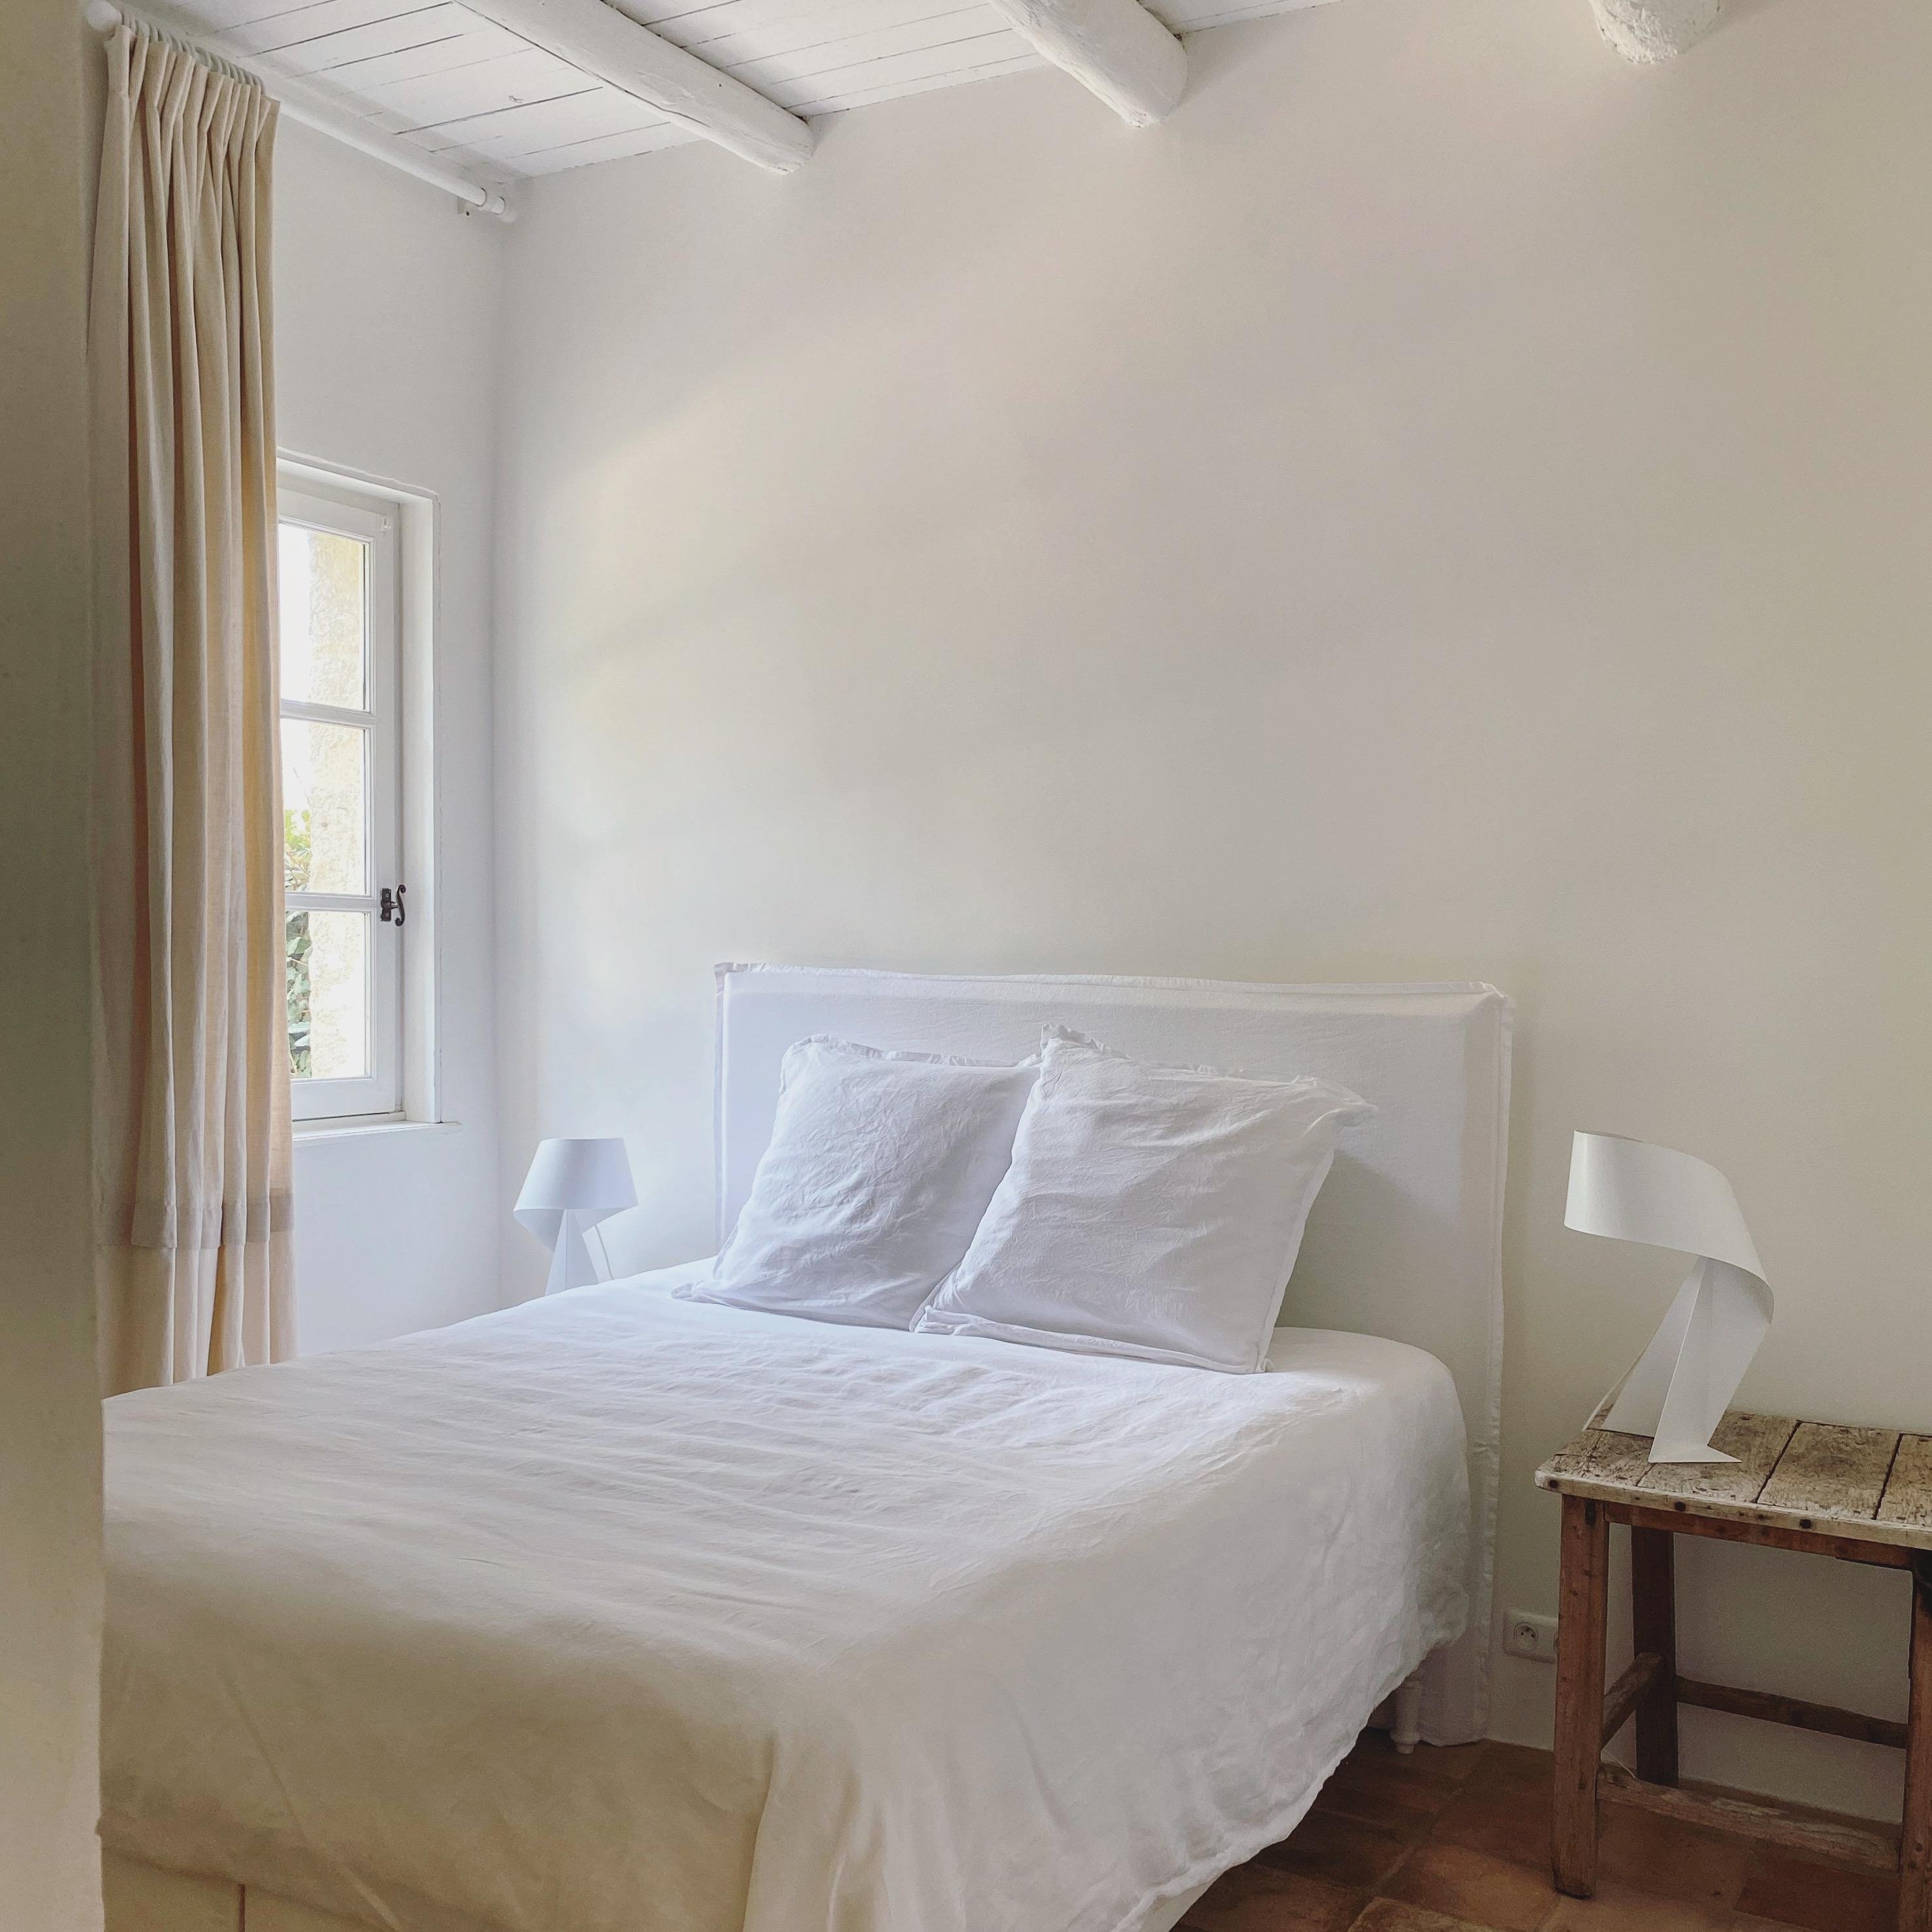 #schlafzimmer #urlaub #reisen #bedroom #couchstyle #couchmagazin #leinen #leinenbettwäsche #bett 